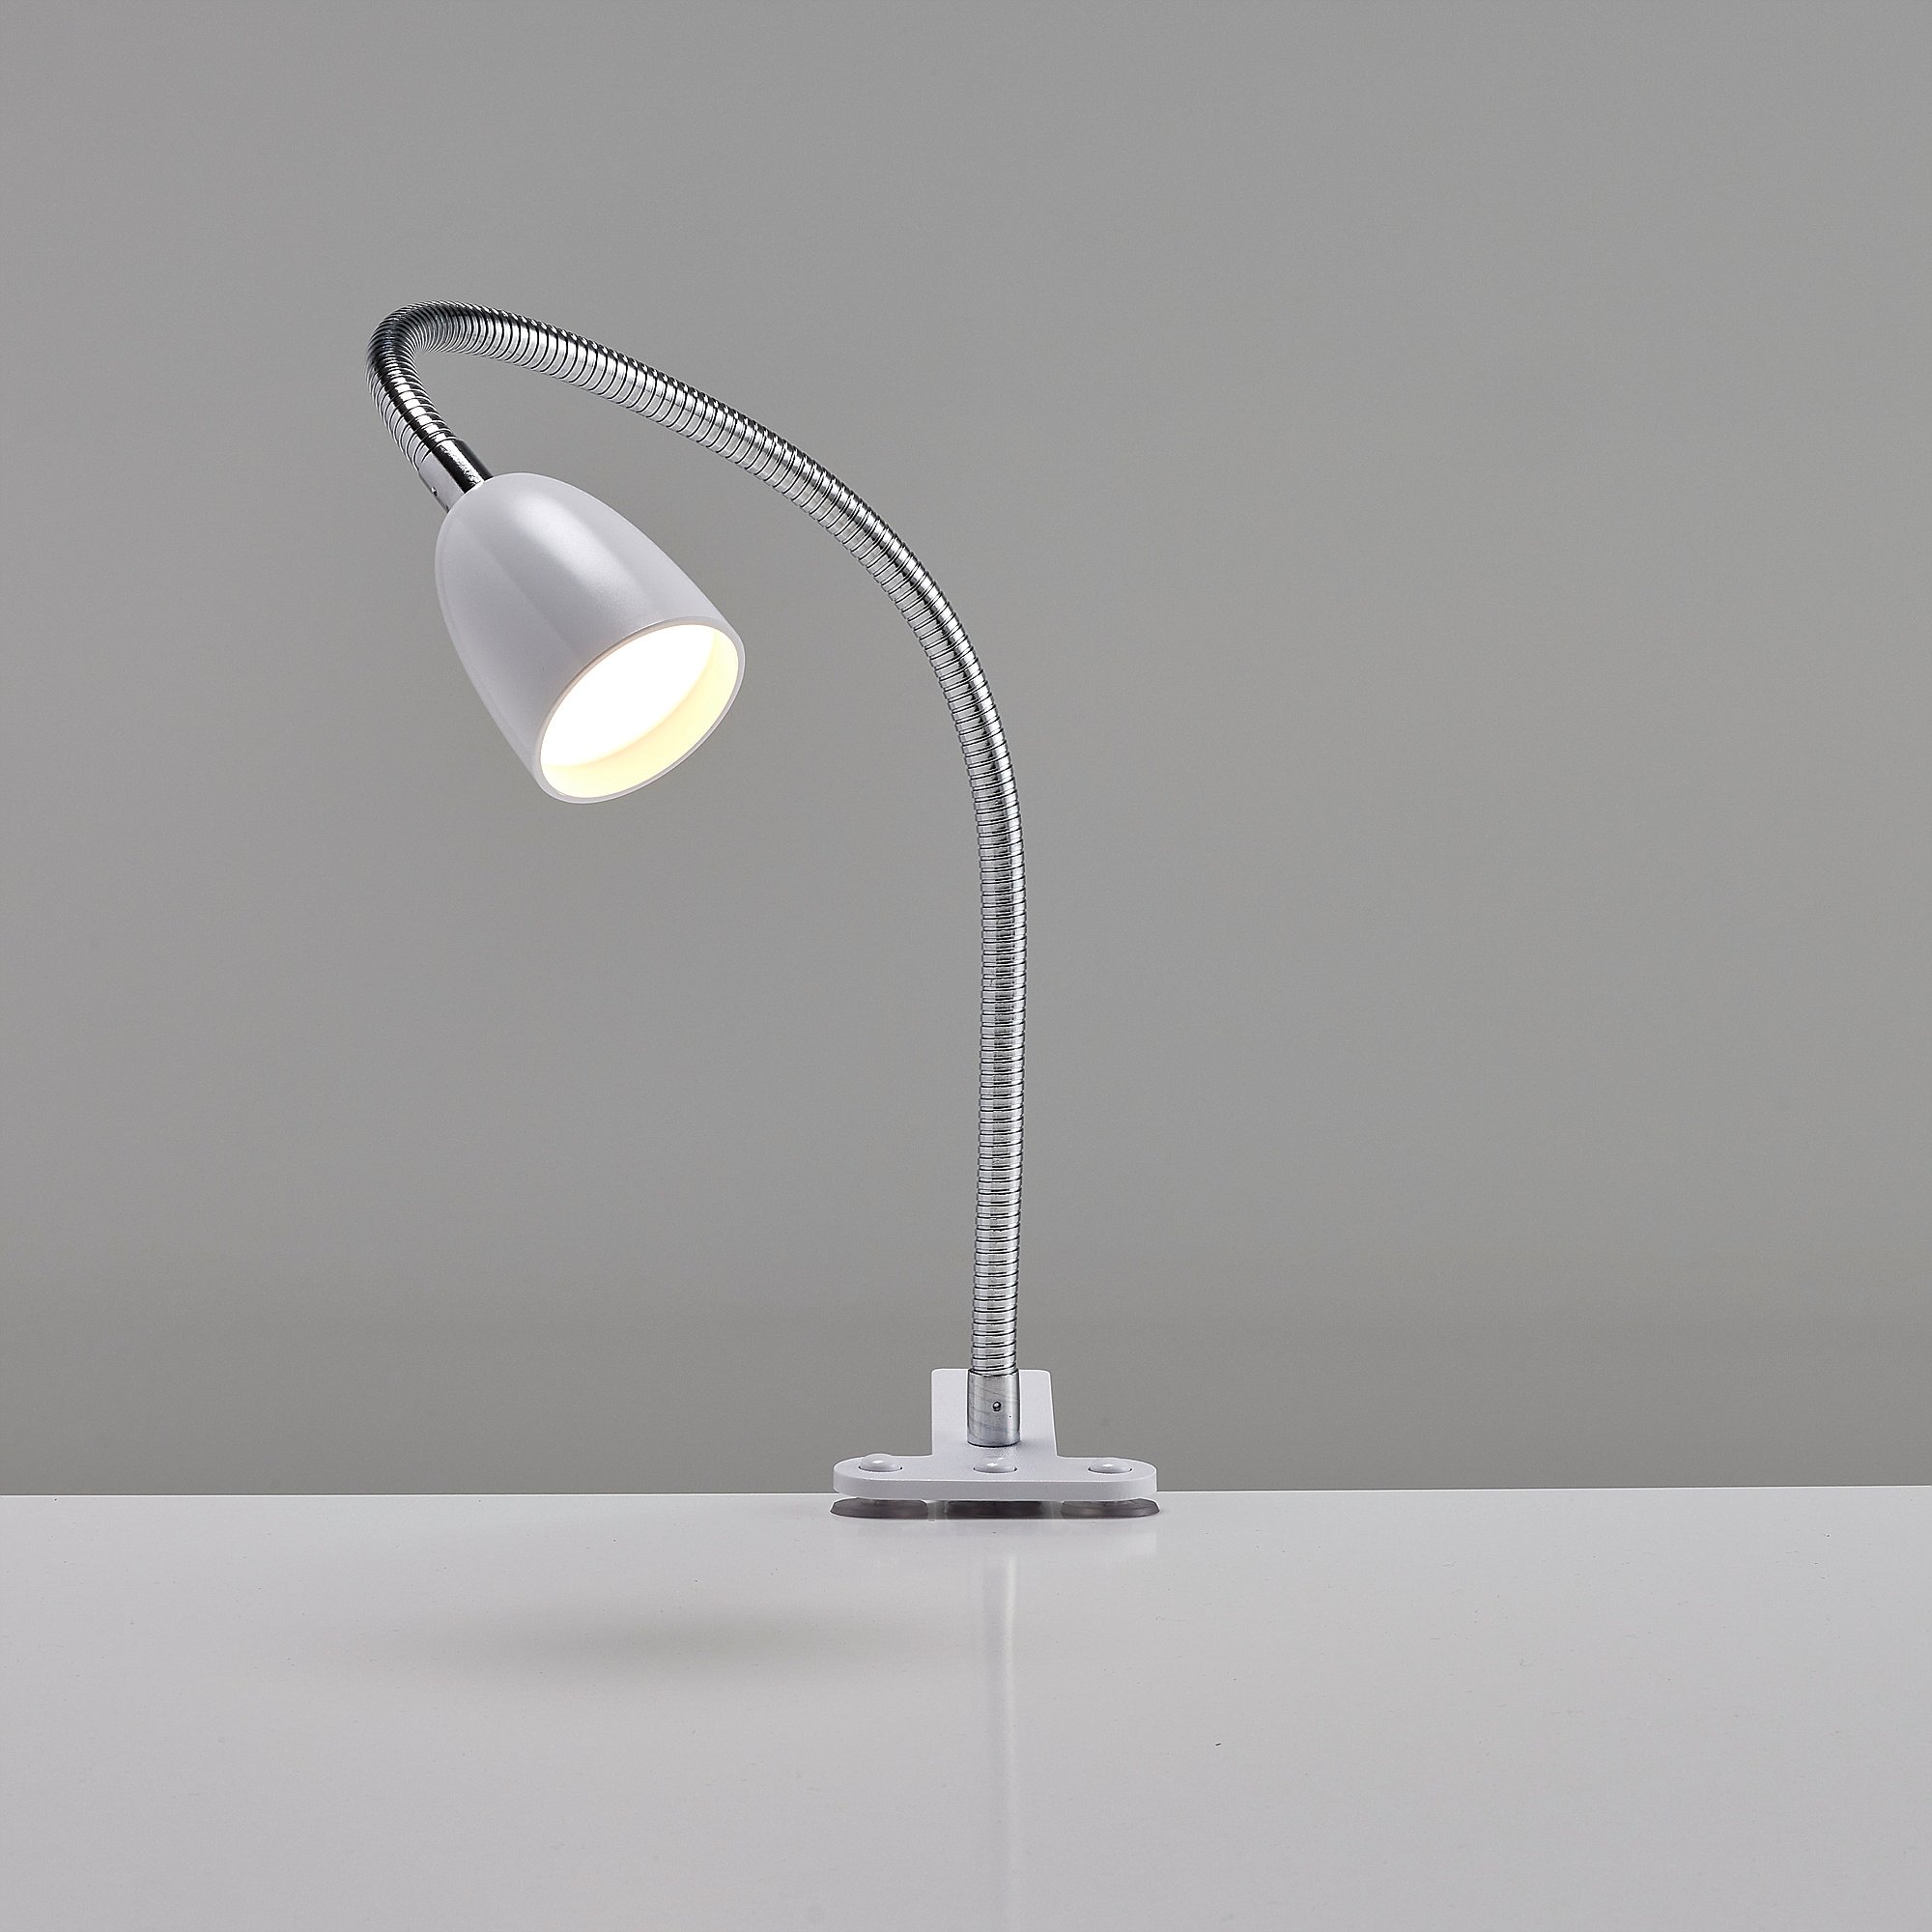 Lamper og belysning til kontoret Køb her | AJ Produkter